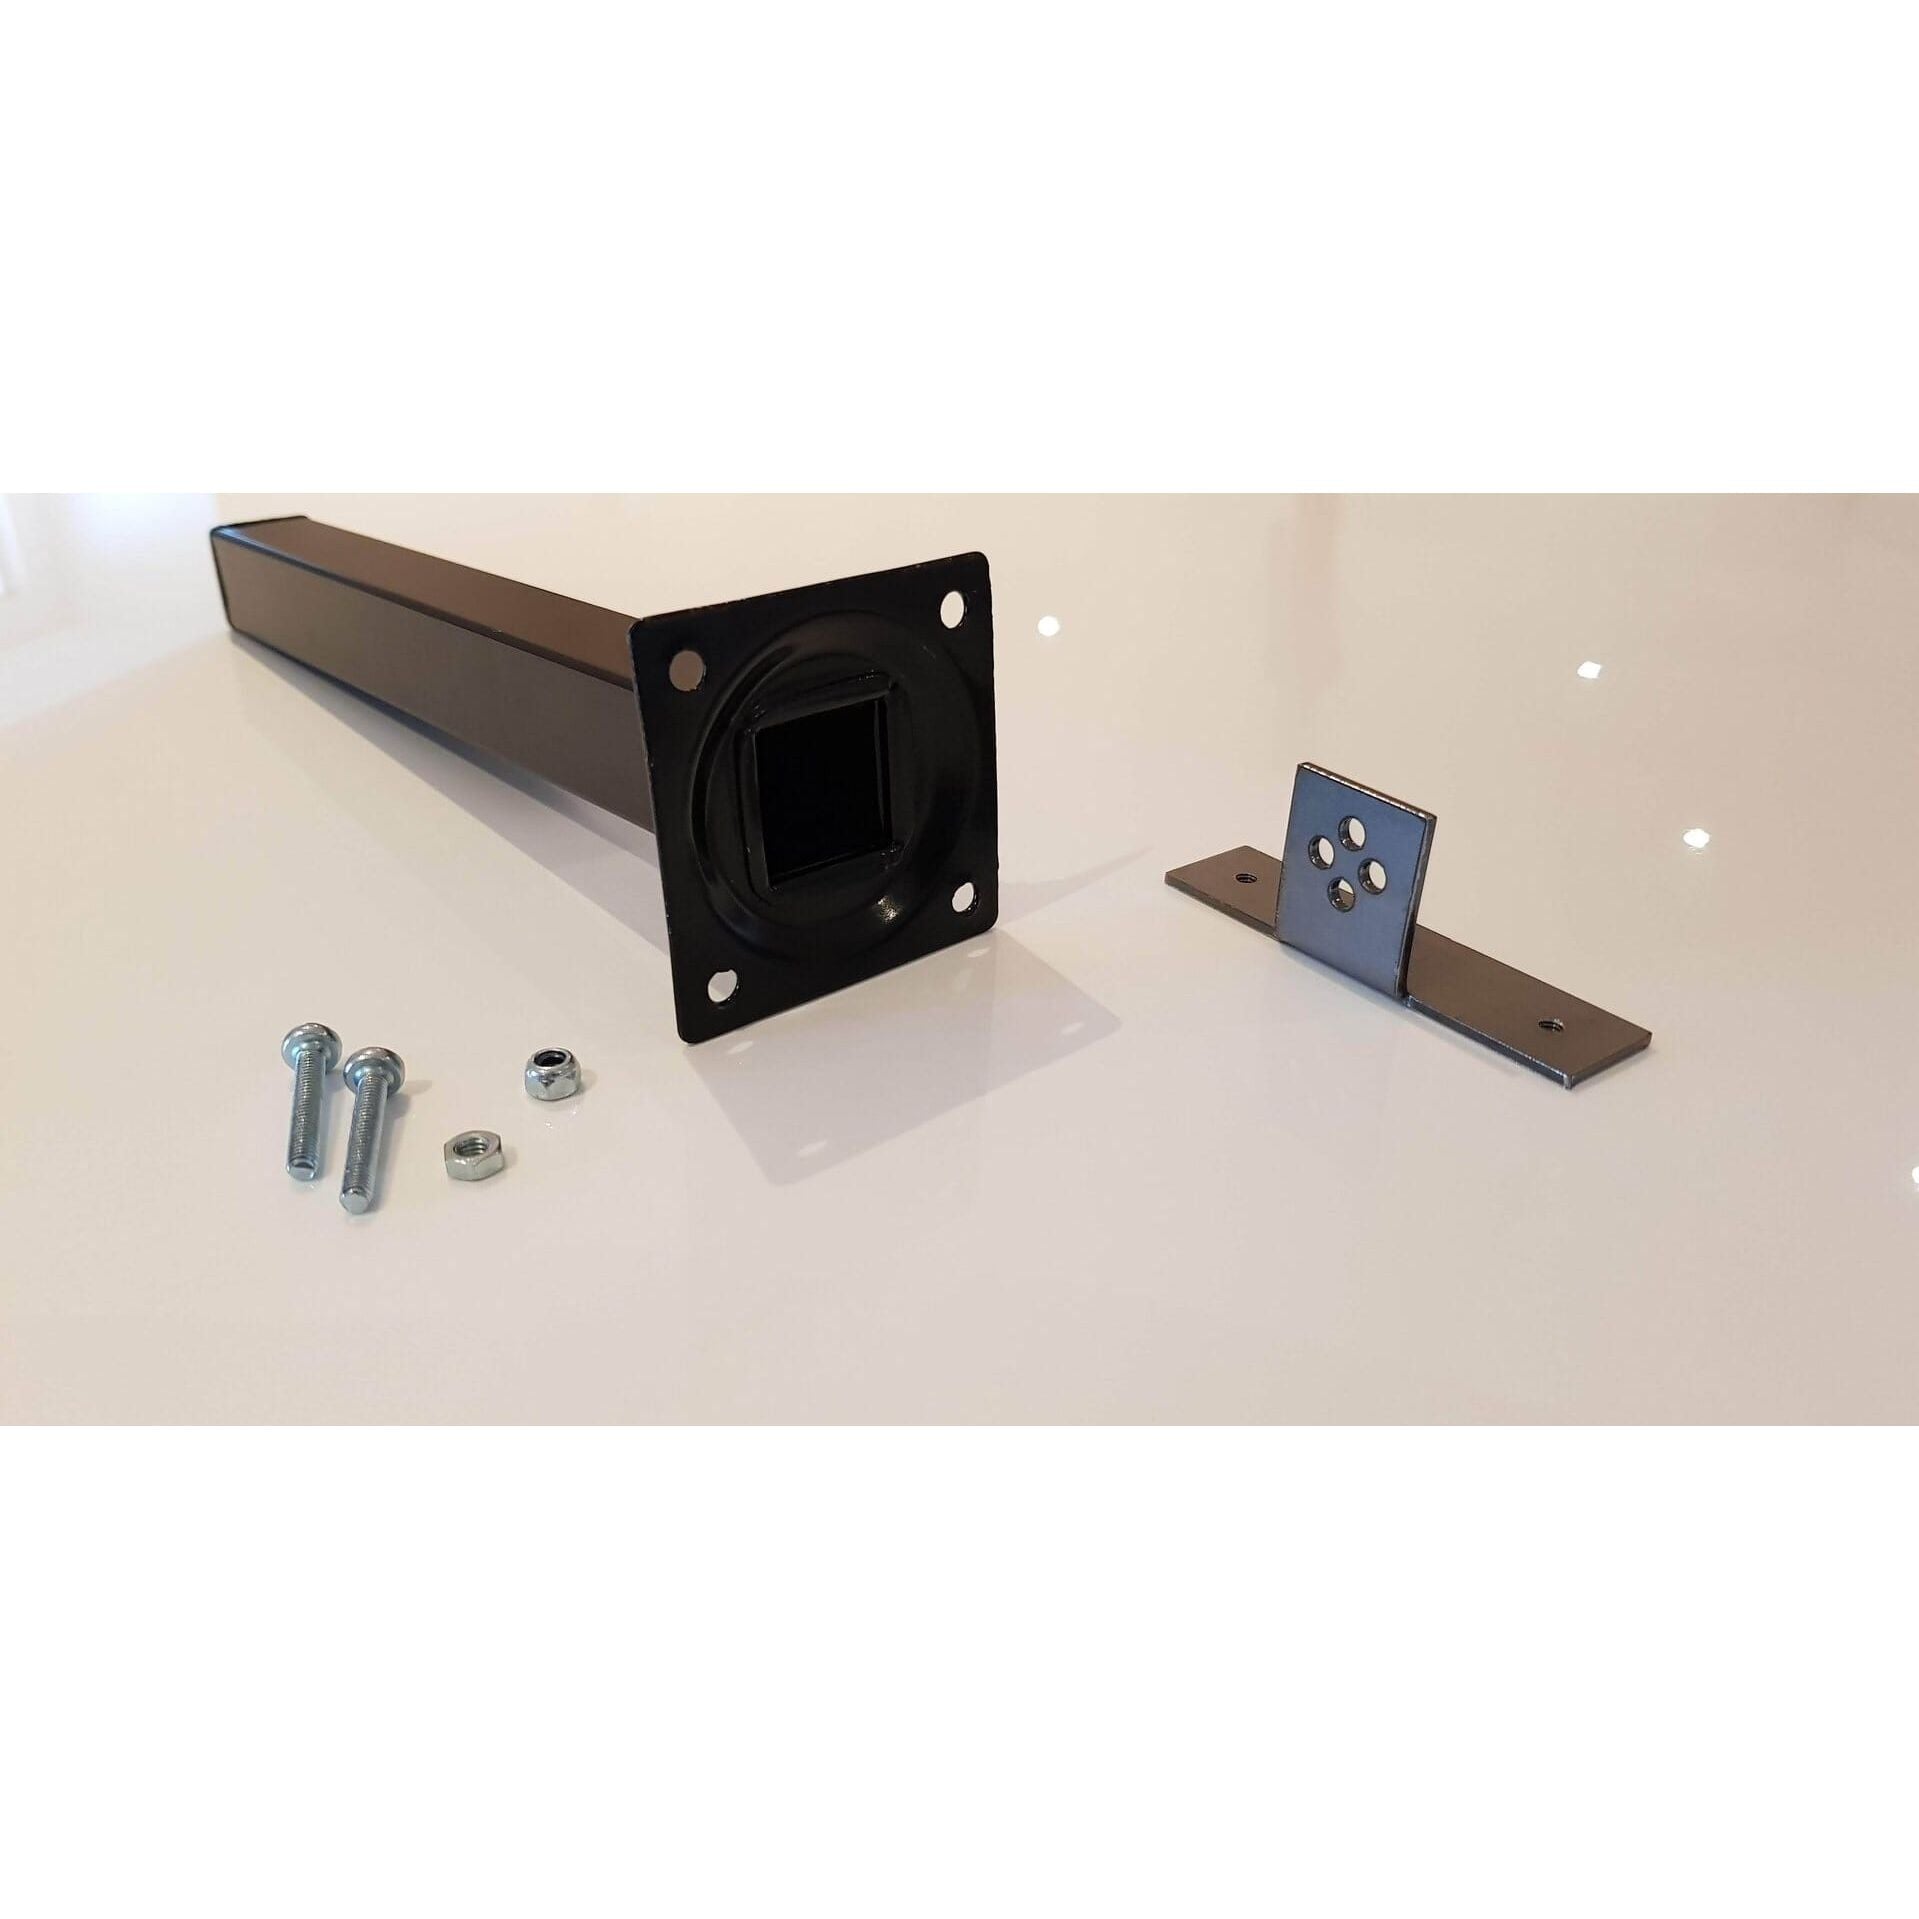 Adapterplatte gewinkelt für Xovis Sensoren - für Deckenmontage - EastekOnlineshop